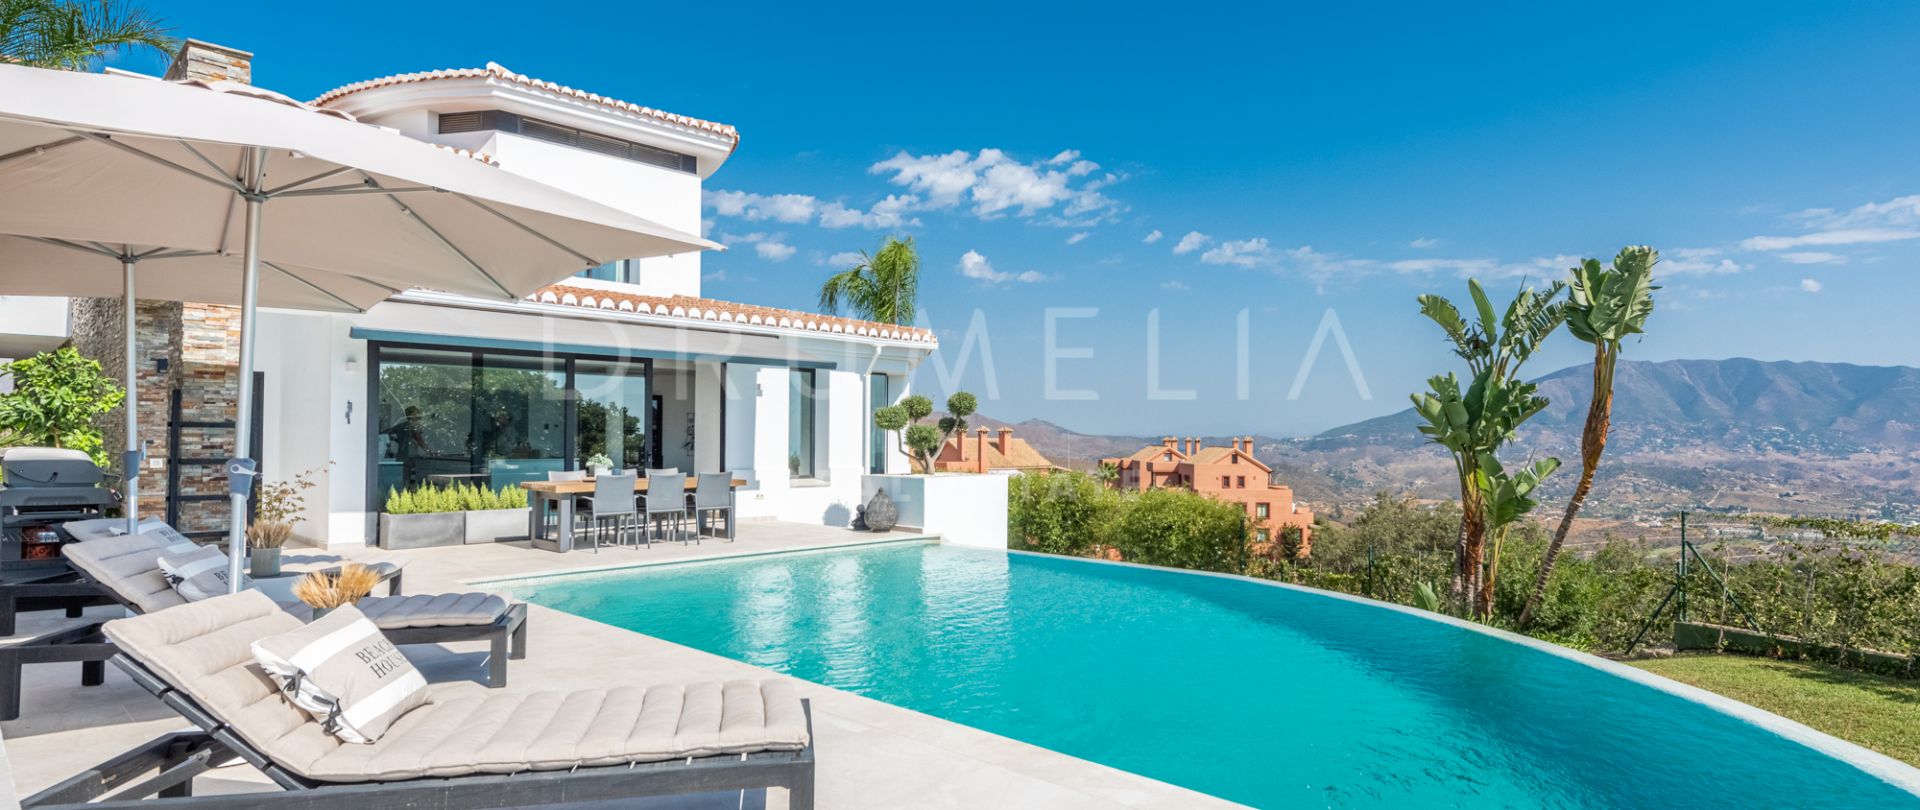 Preciosa villa de lujo reformada con vistas panorámicas al mar en La Mairena, Marbella Este.